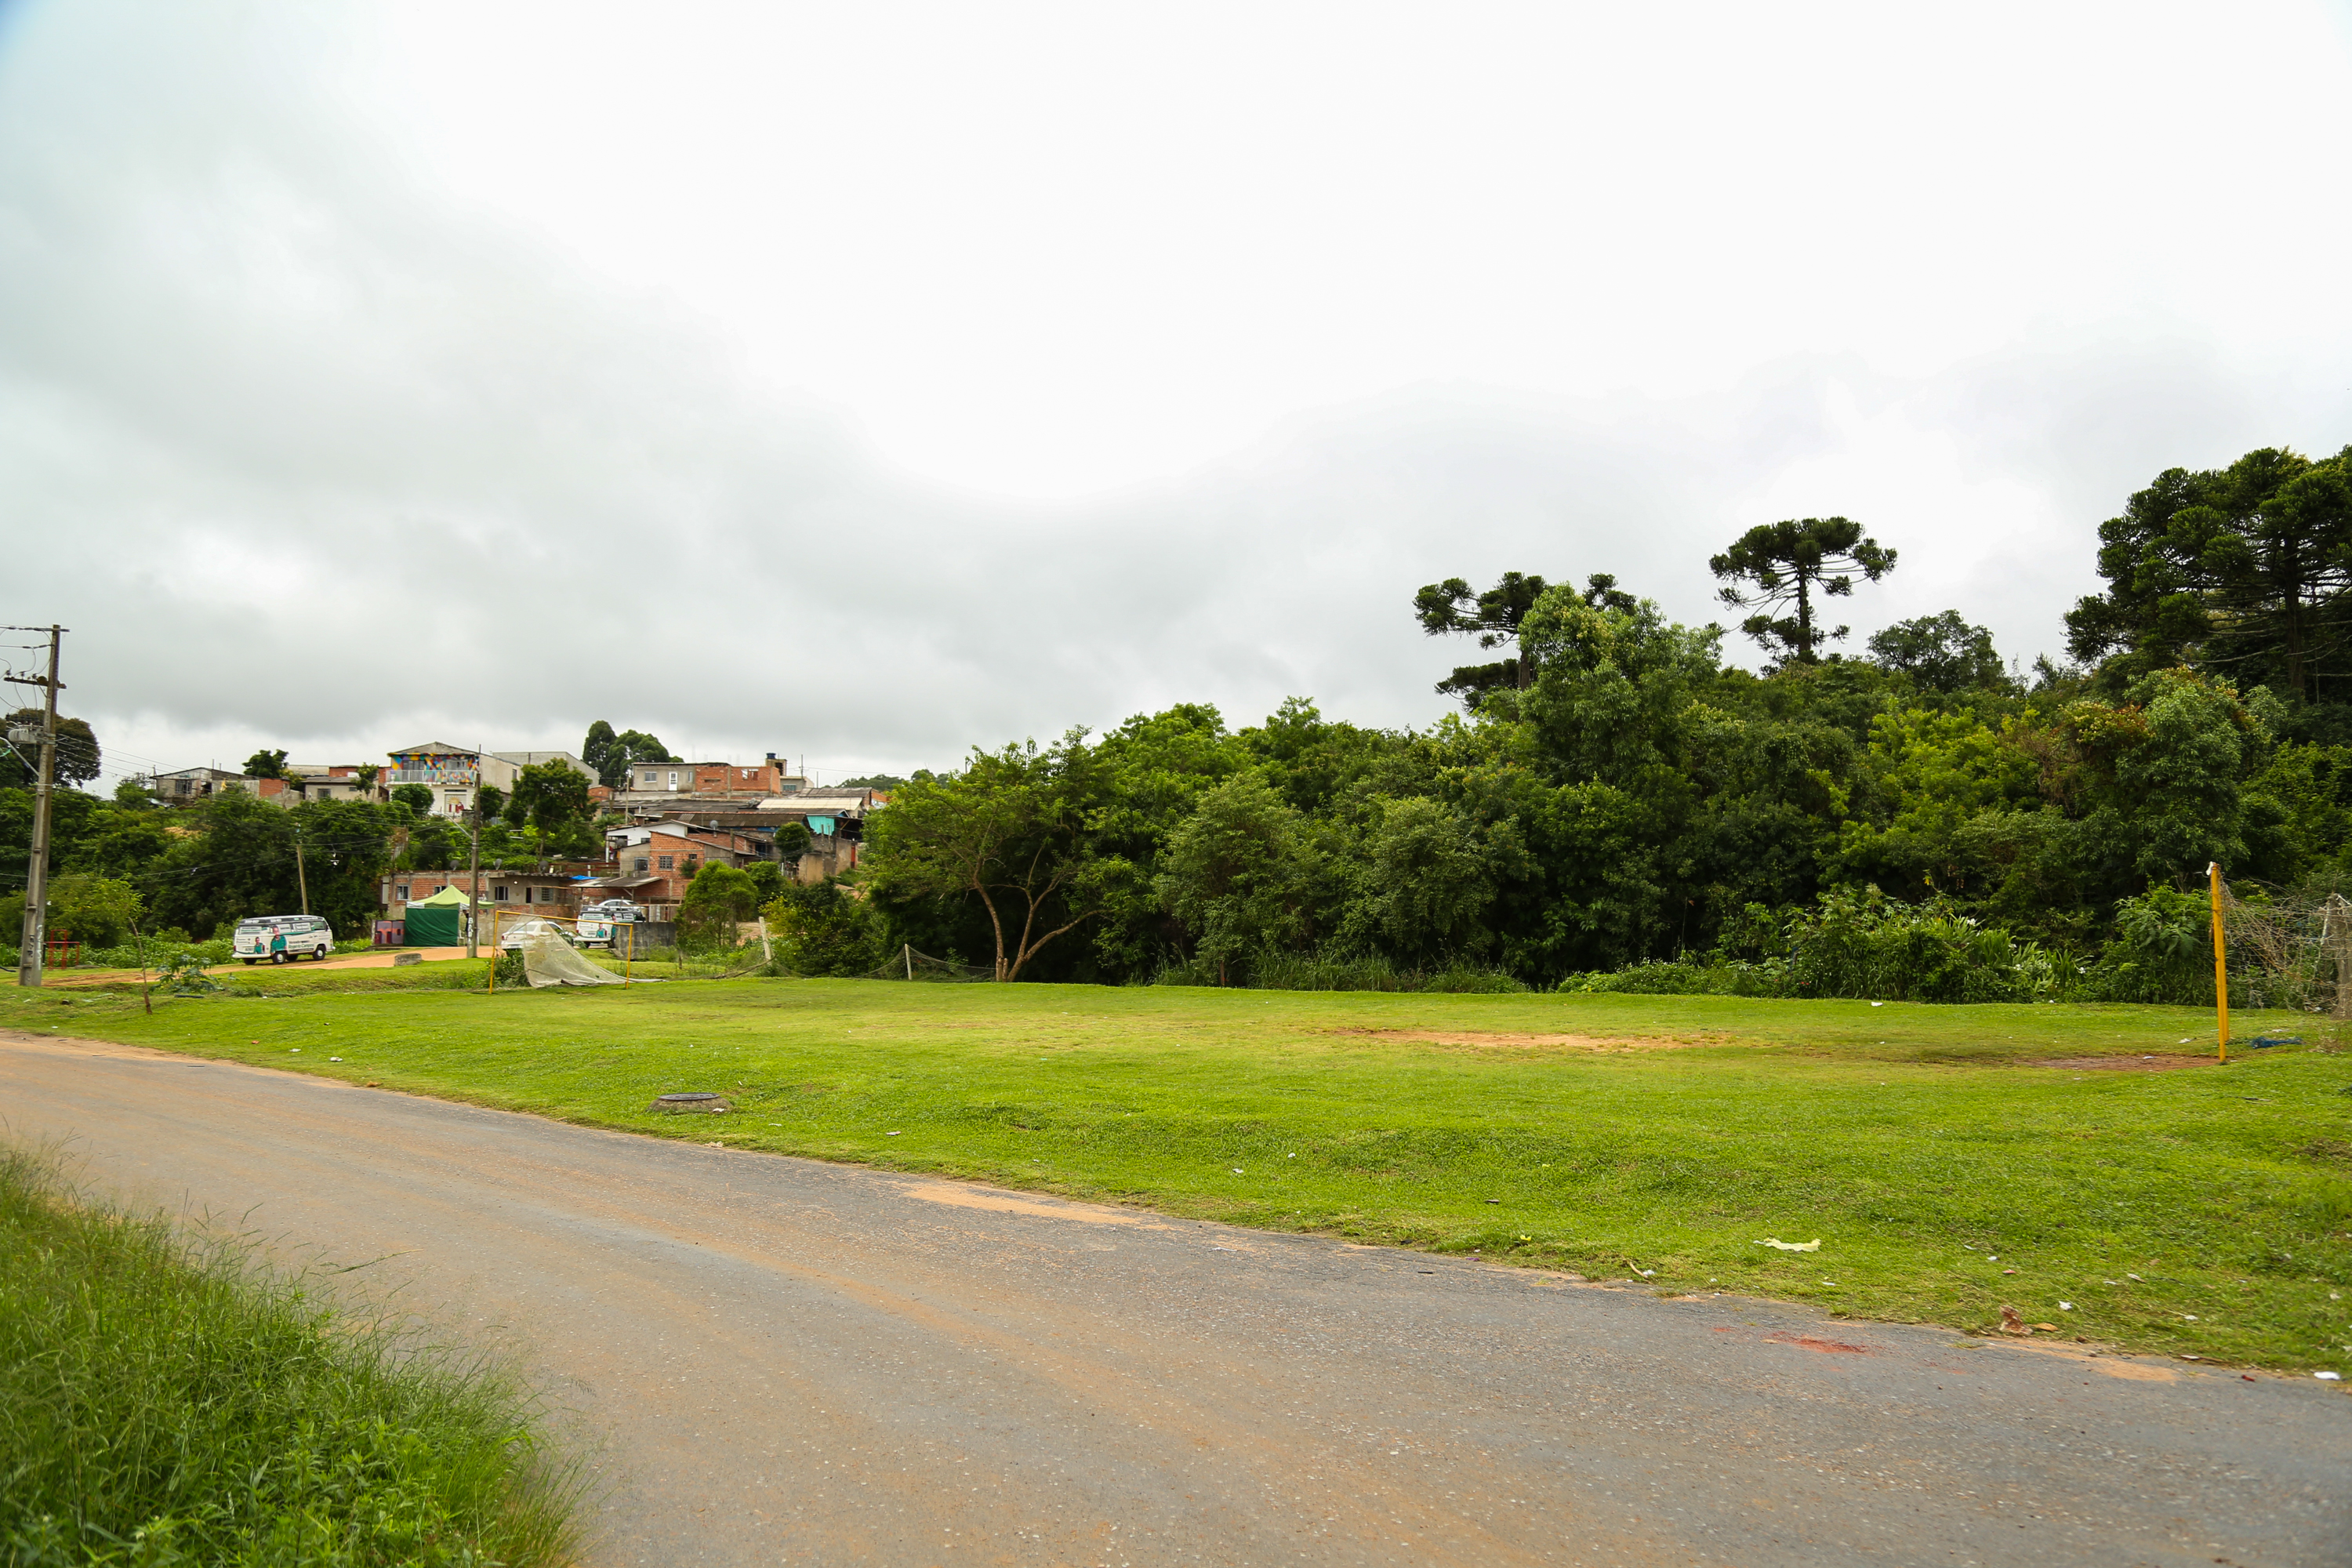 Orçamento: Rogério Campos destina emendas para asfalto e praça no Tatuquara